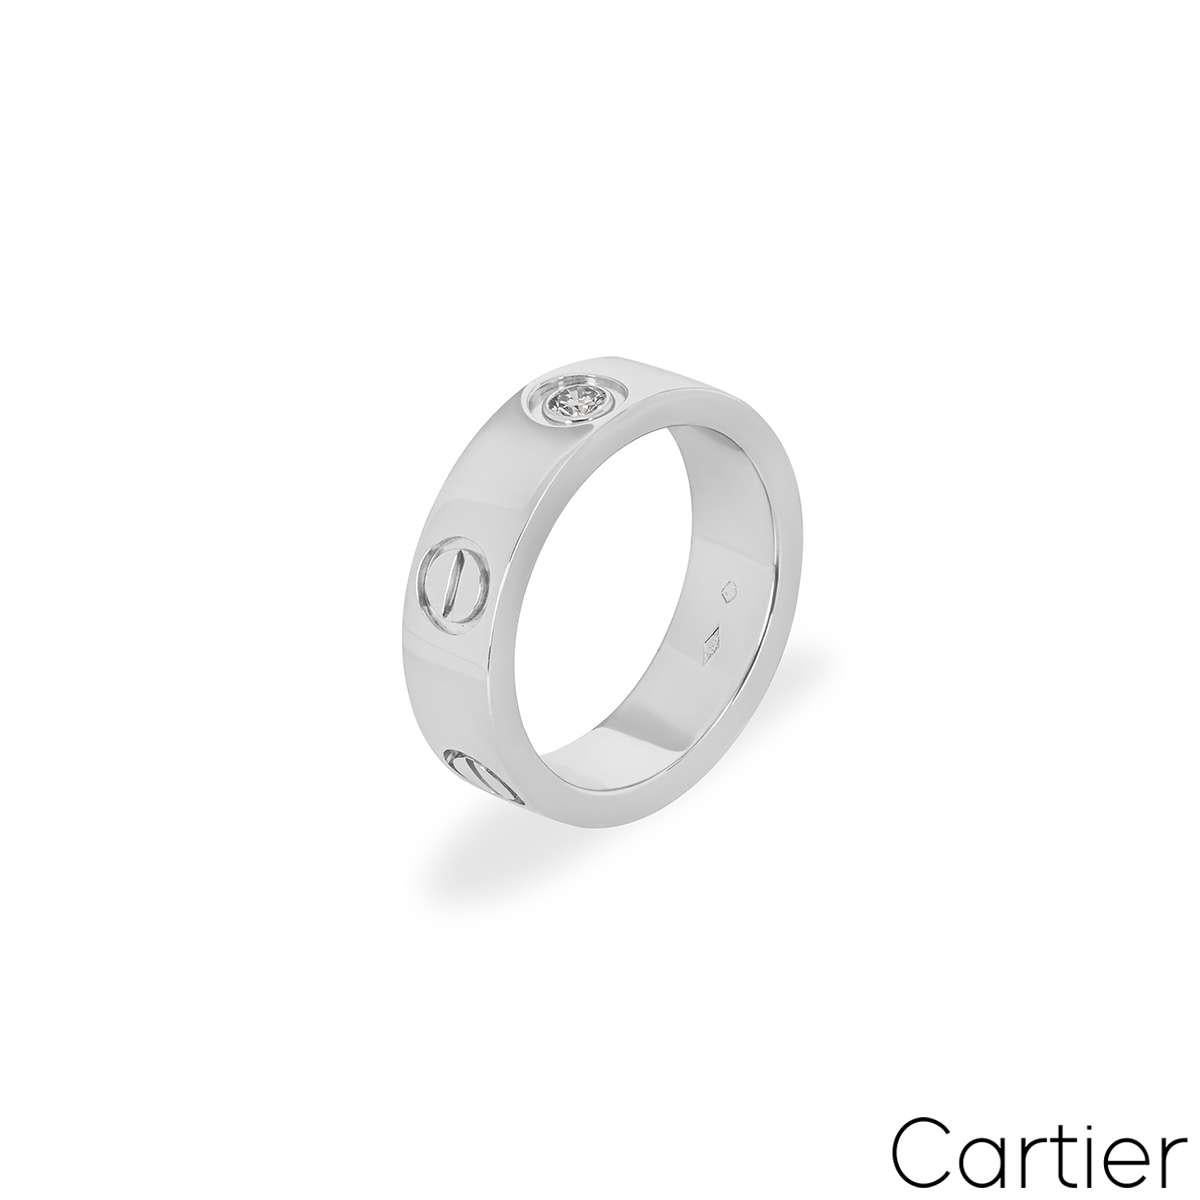 Ein Cartier-Diamantring aus Platin aus der Collection'S Love. Der Ring besteht aus den ikonischen Cartier-Schrauben und einem einzelnen runden Diamanten im Brillantschliff, der in der Mitte gefasst ist. Mit einer Breite von 5,5 mm entspricht der